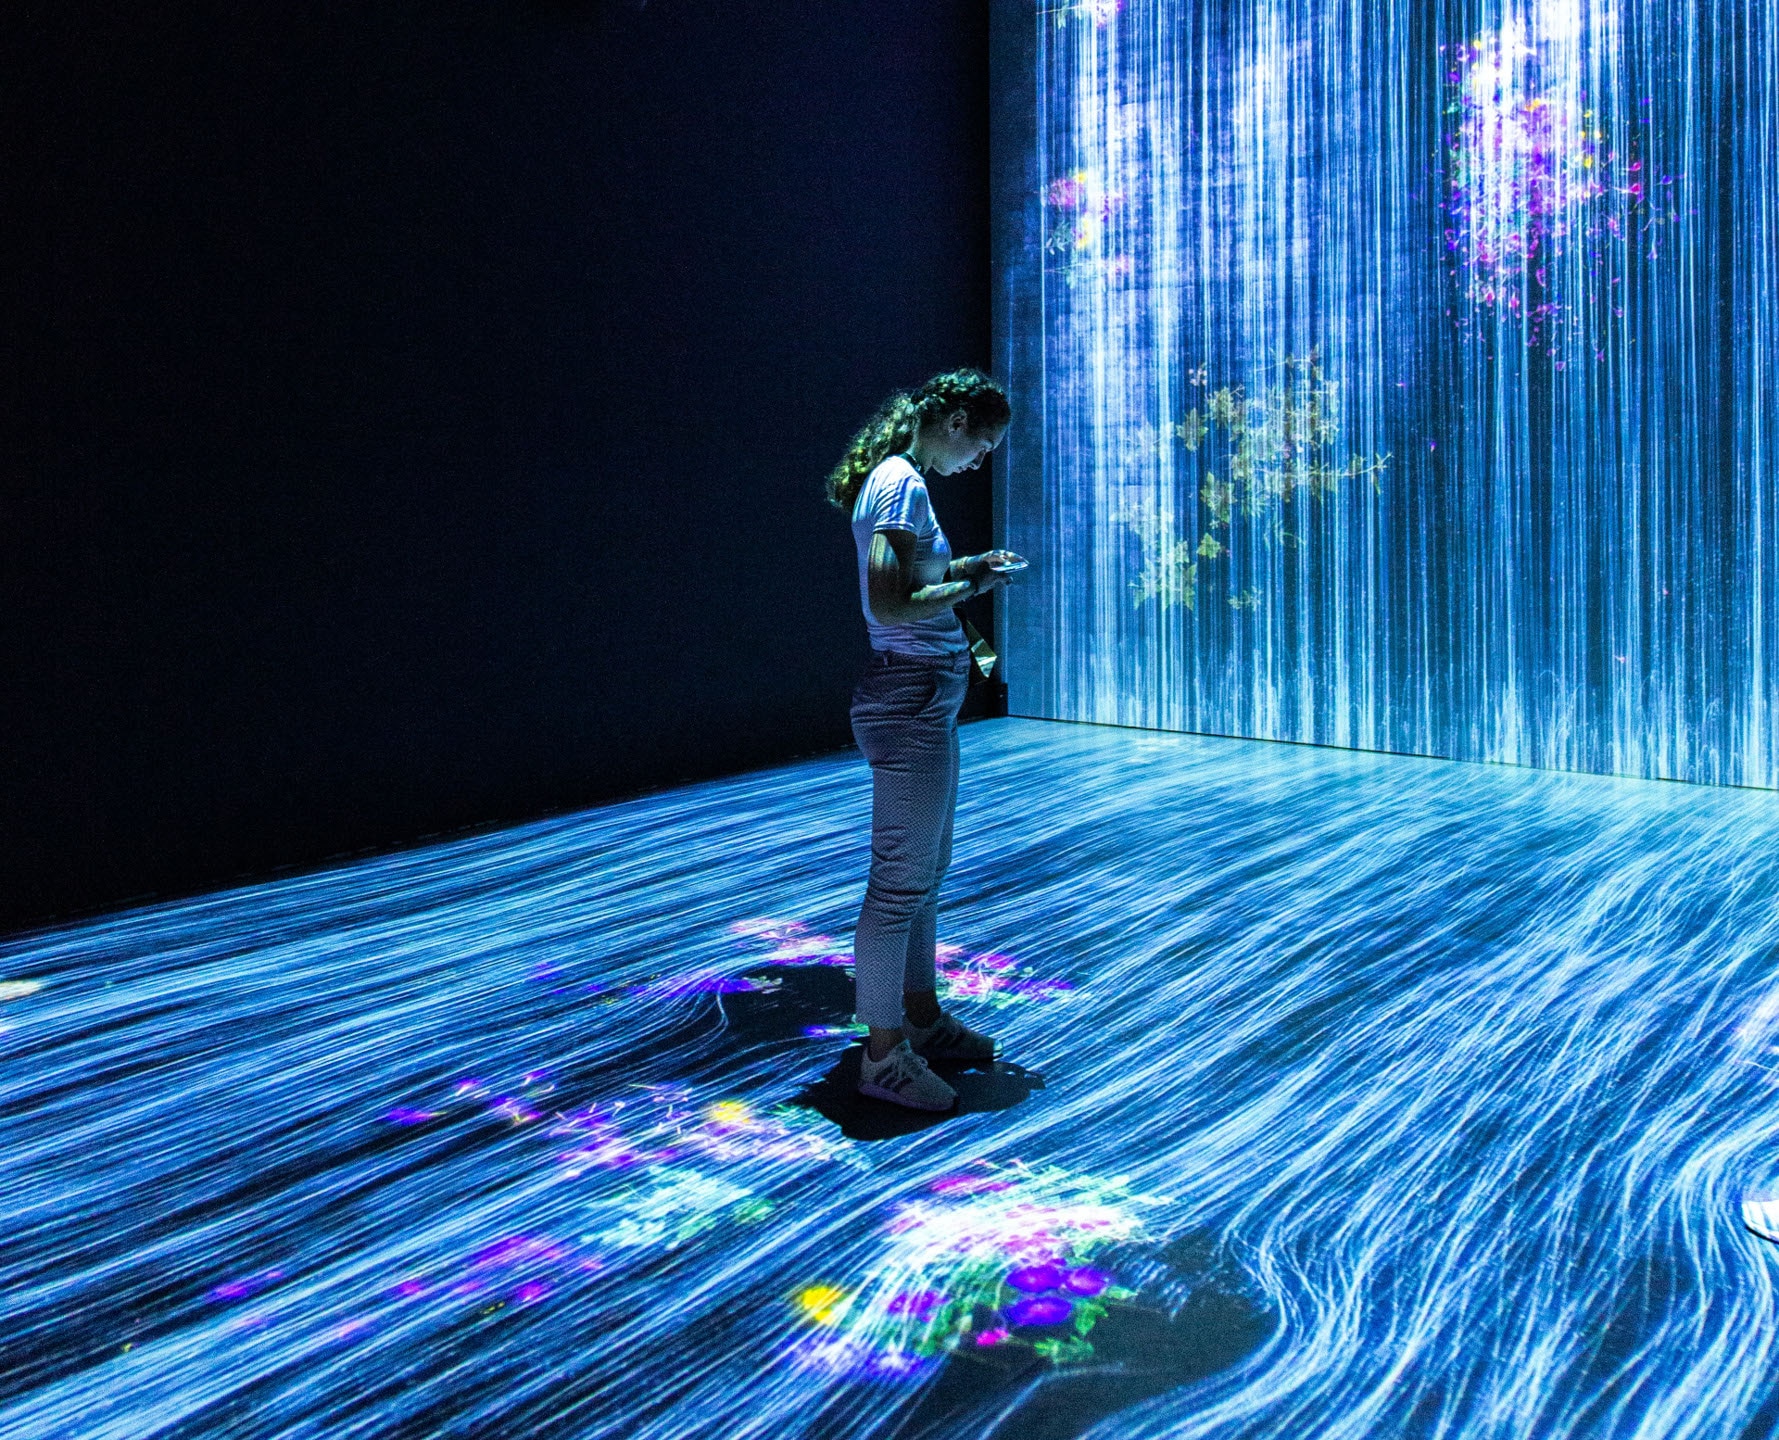 Fille debout dans une galerie d’art interactive avec des projections de lumière ressemblant à des fibres dispersées dans la pièce.